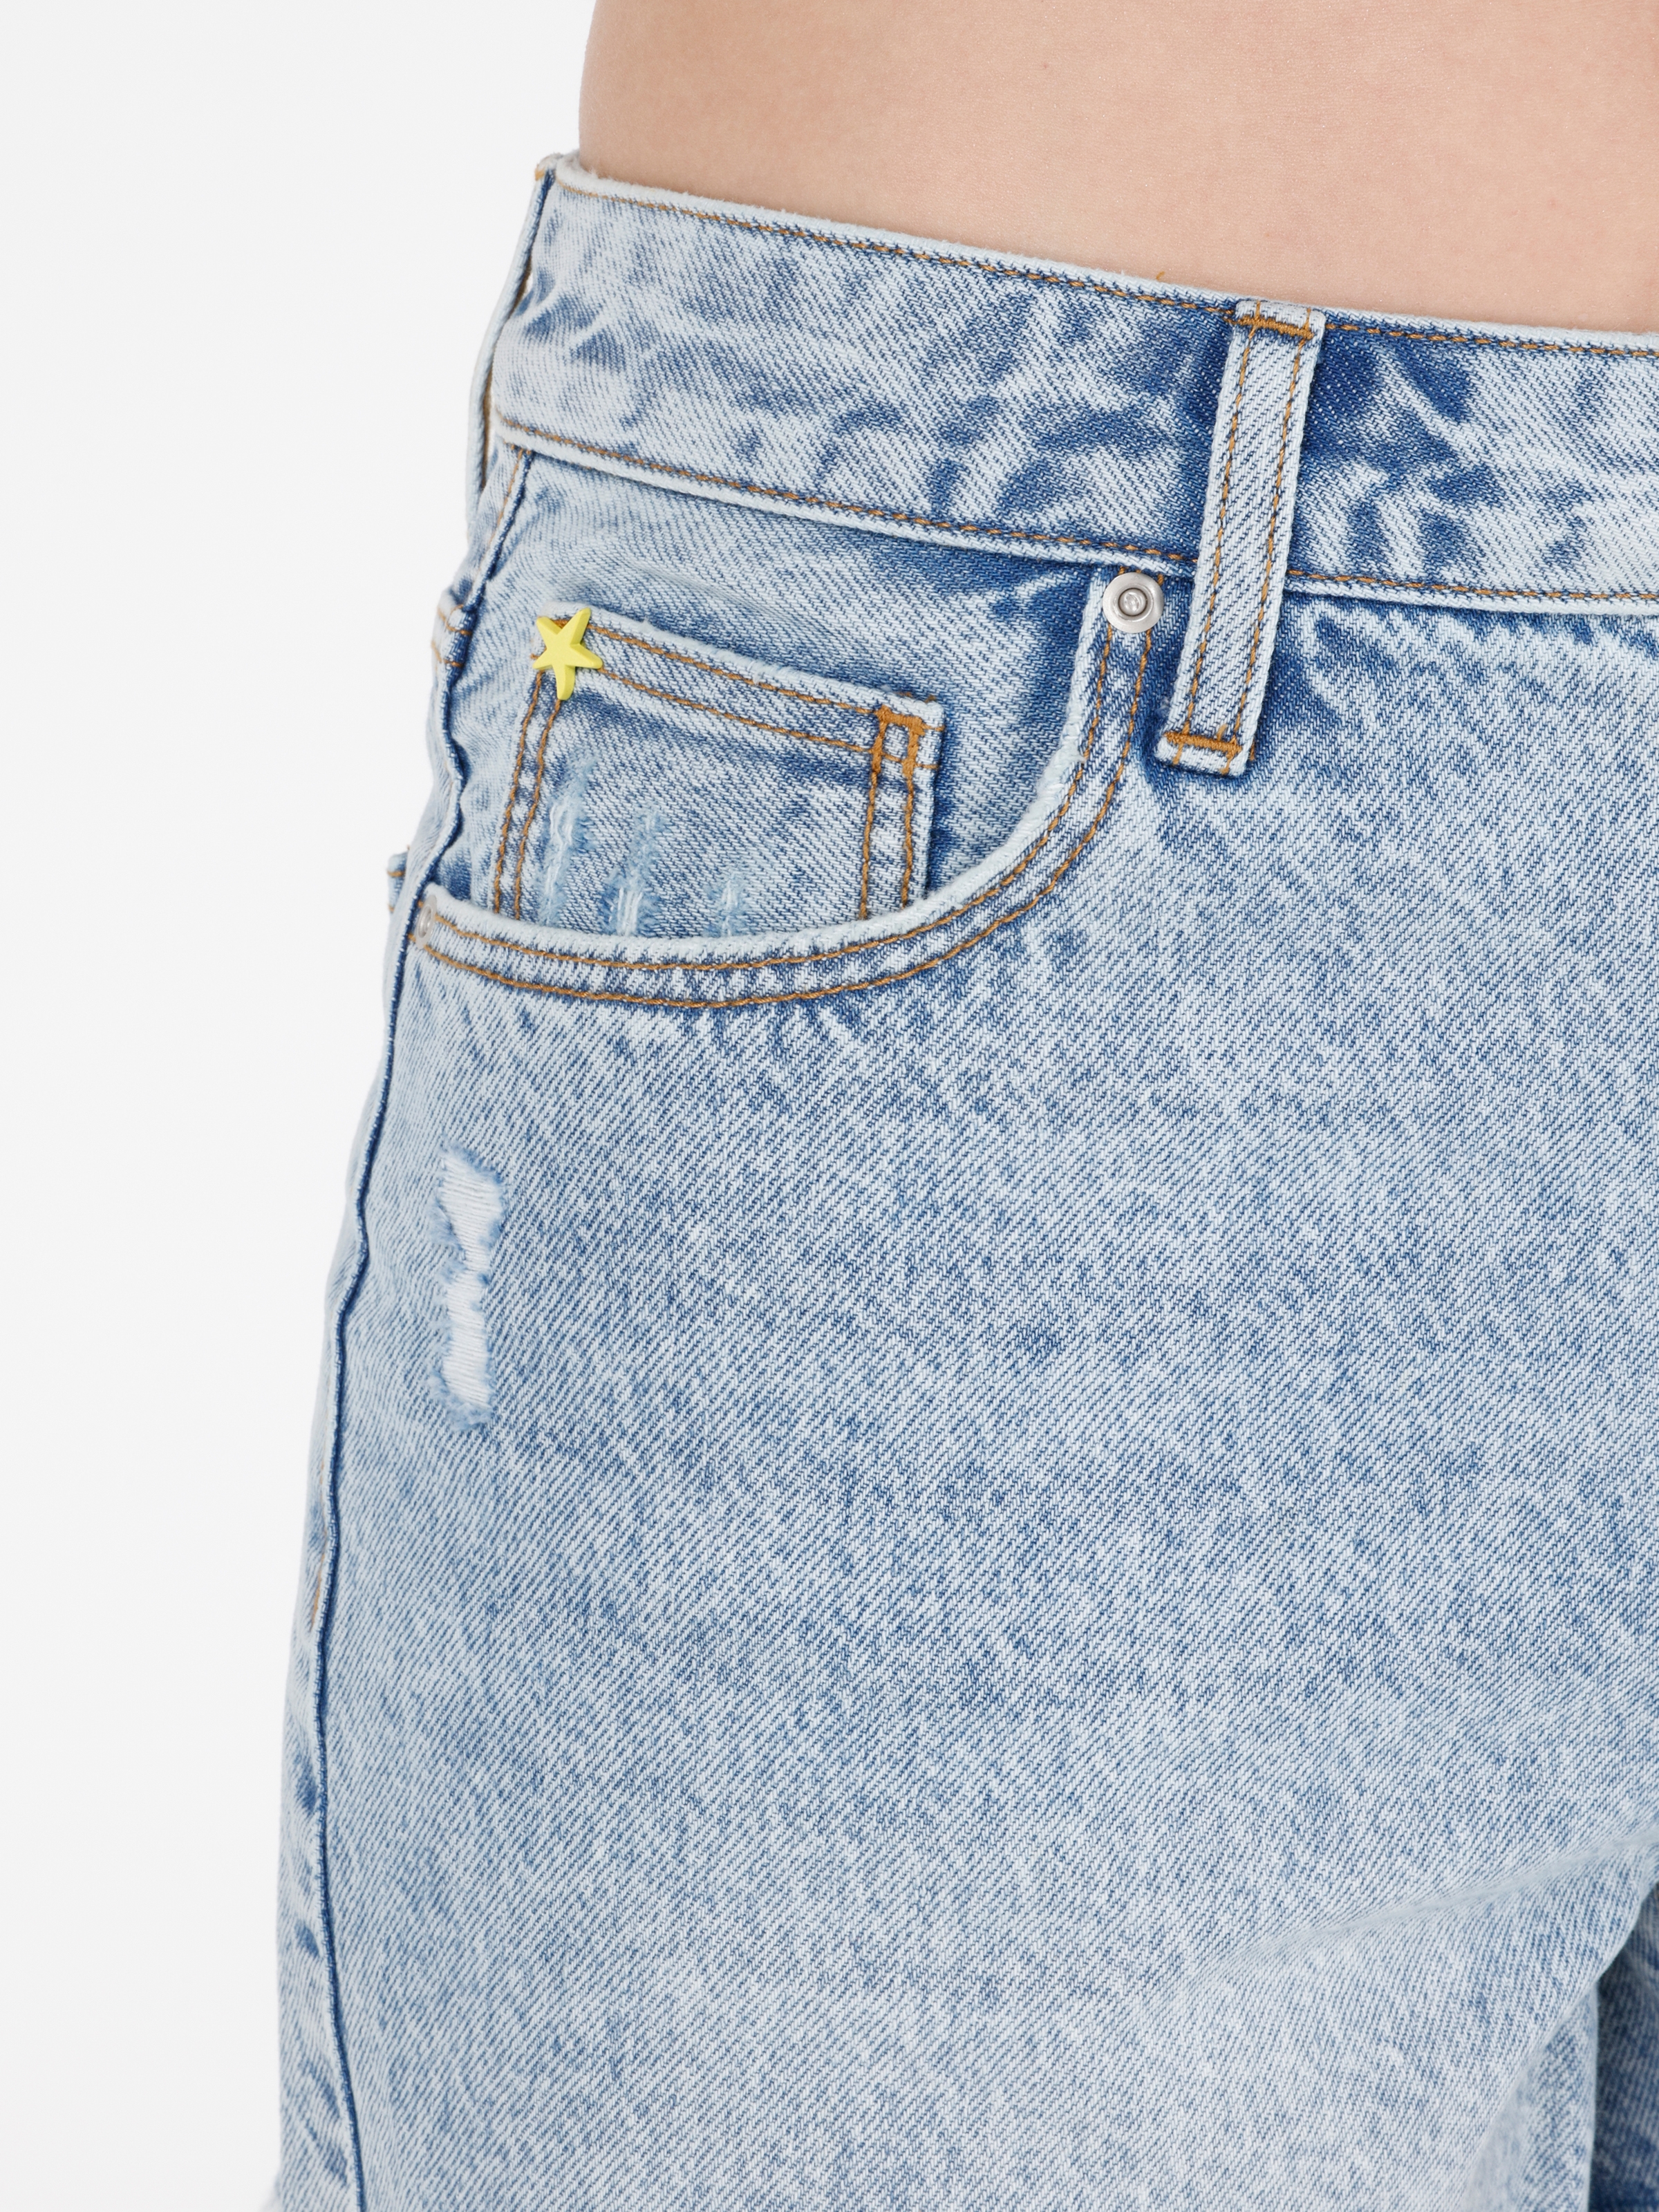 Afișați detalii pentru Short / Pantaloni Scurti De Dama Albastru Mom Fit  